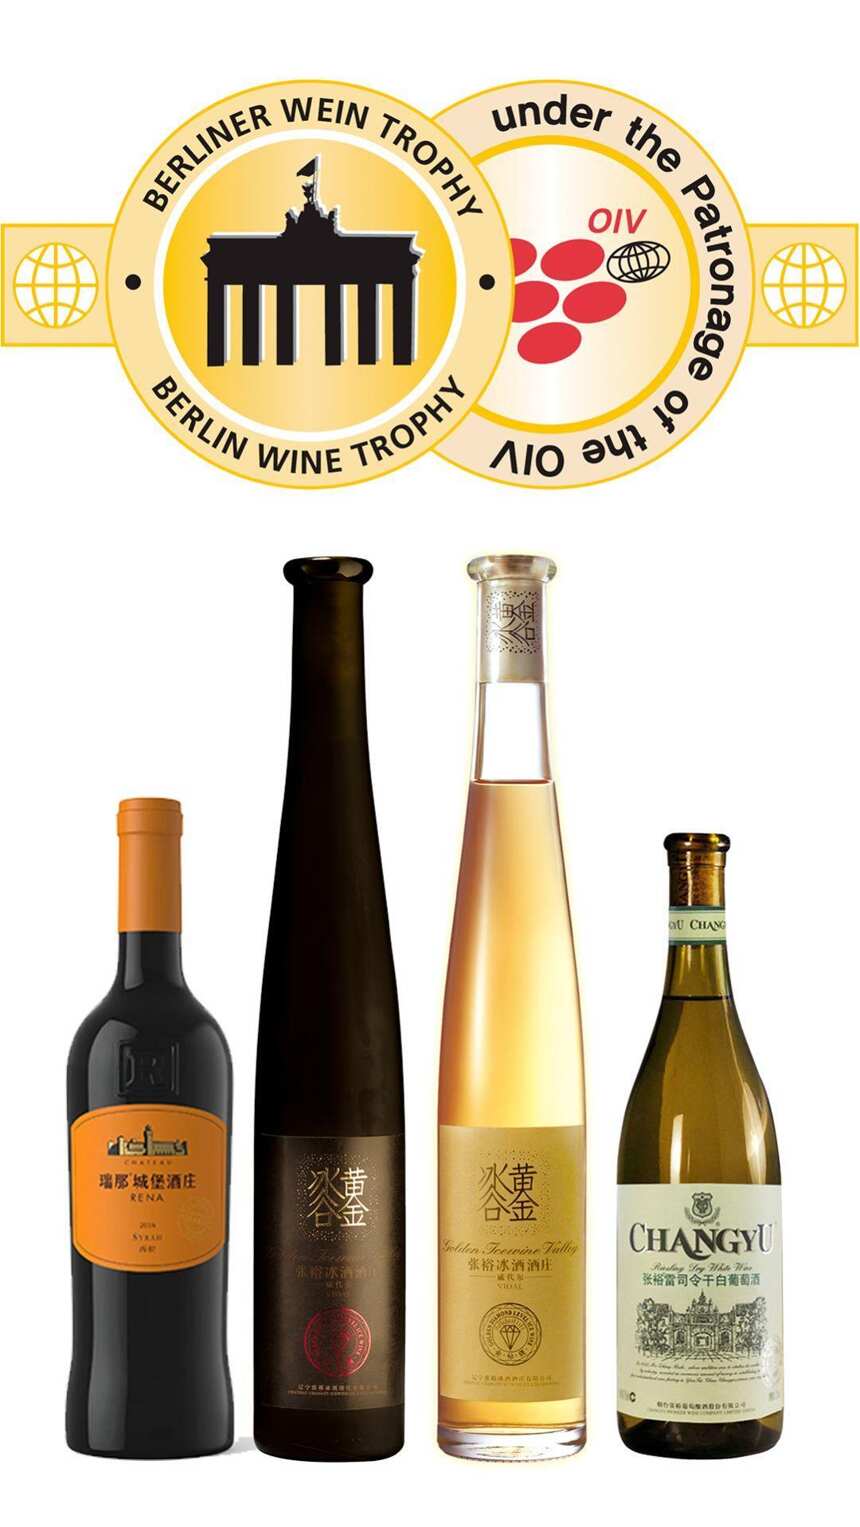 张裕成为2020年柏林葡萄酒大赛斩获金奖最多的中国品牌